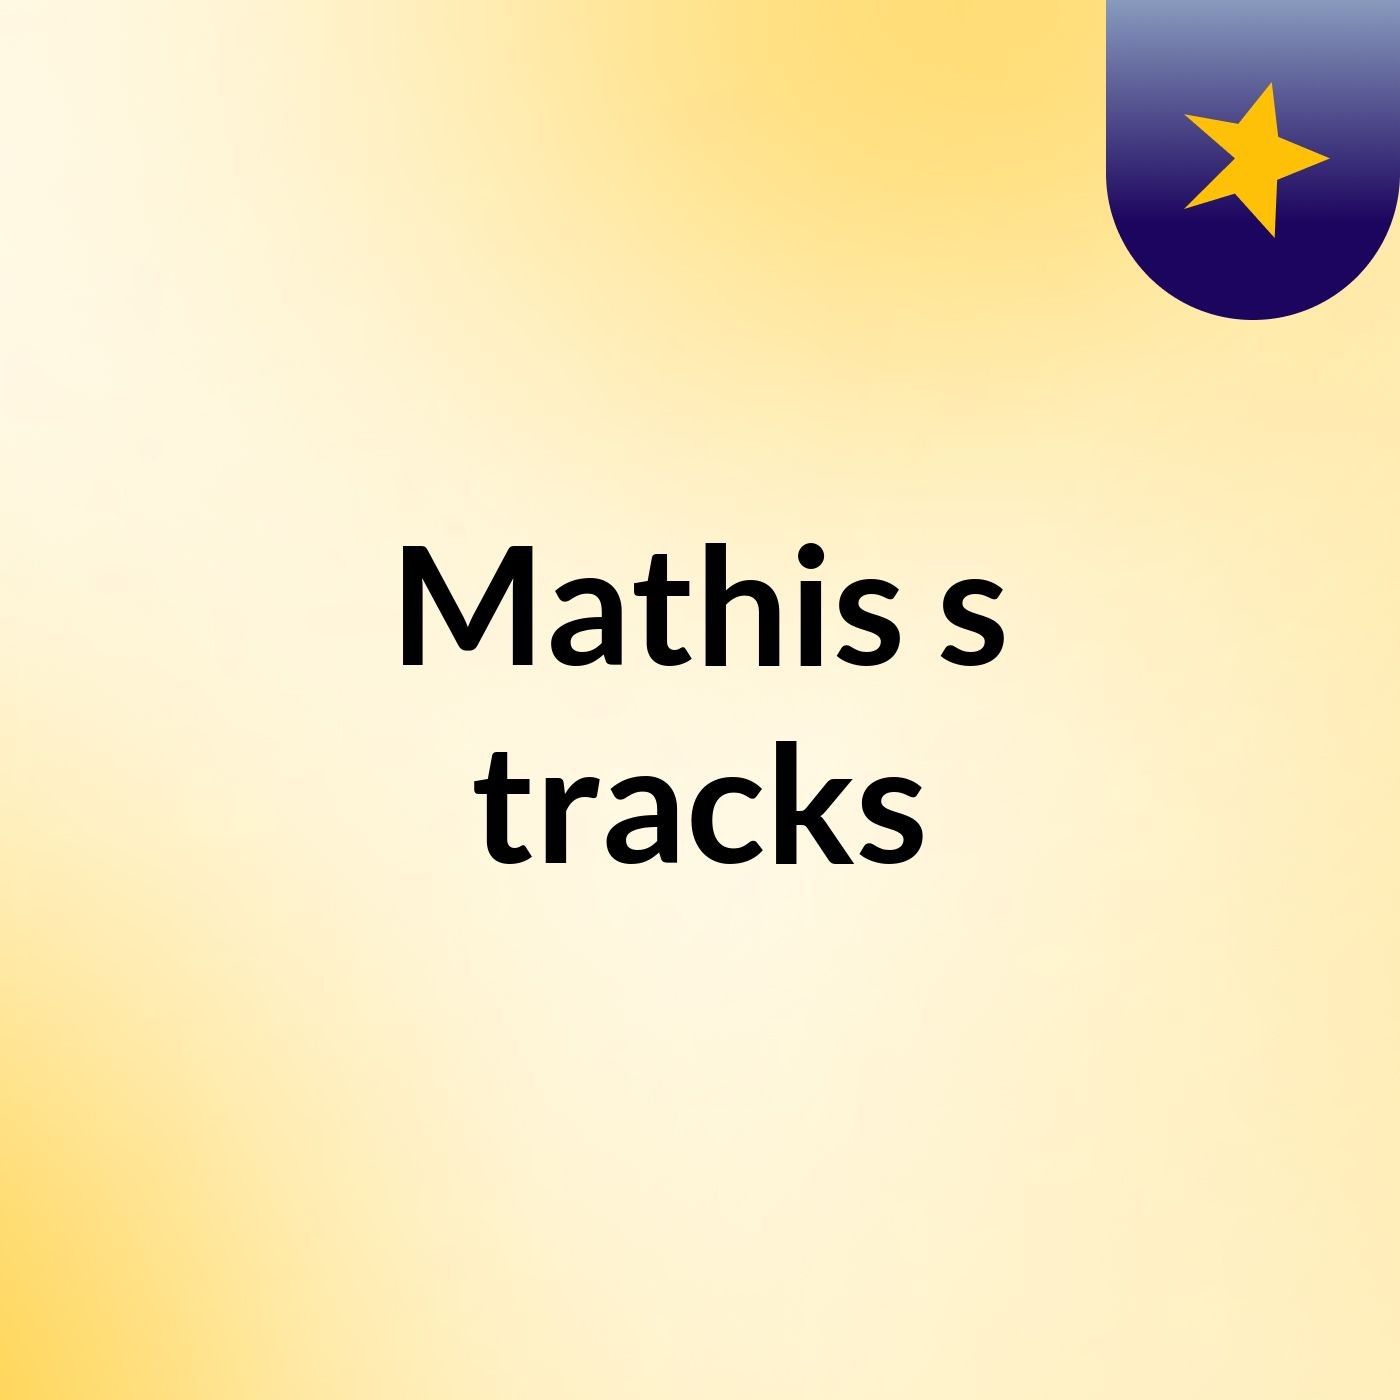 Mathis's tracks